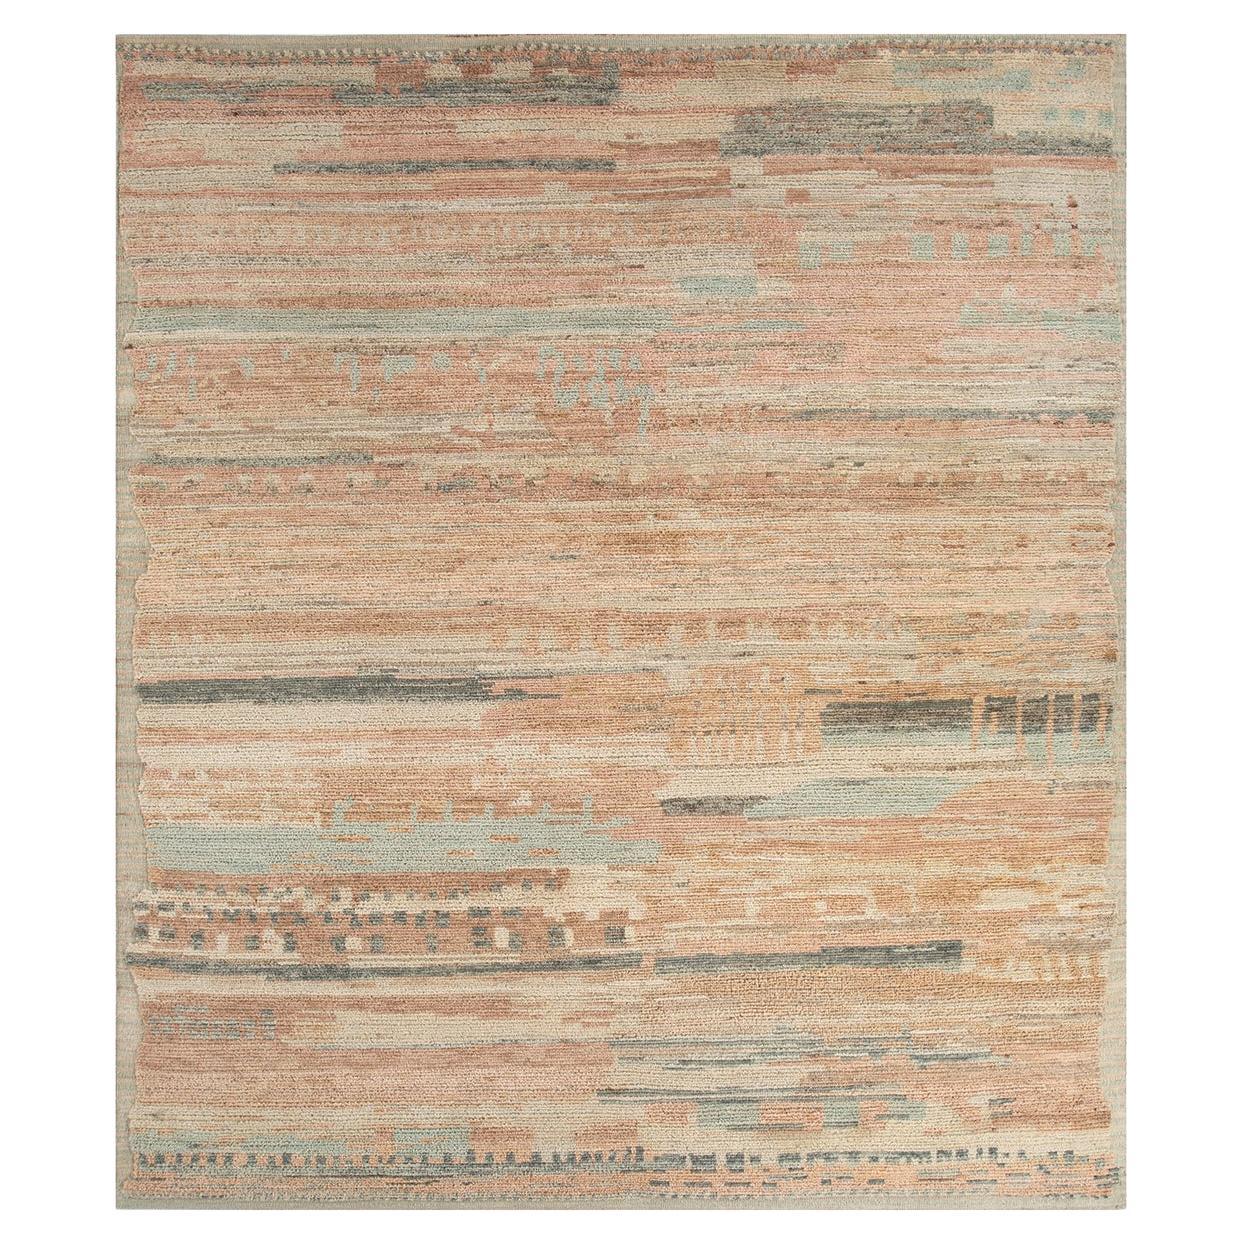 Stapelbarer Teppich von Rural Weavers, geknüpft, Wolle, 240x300cm